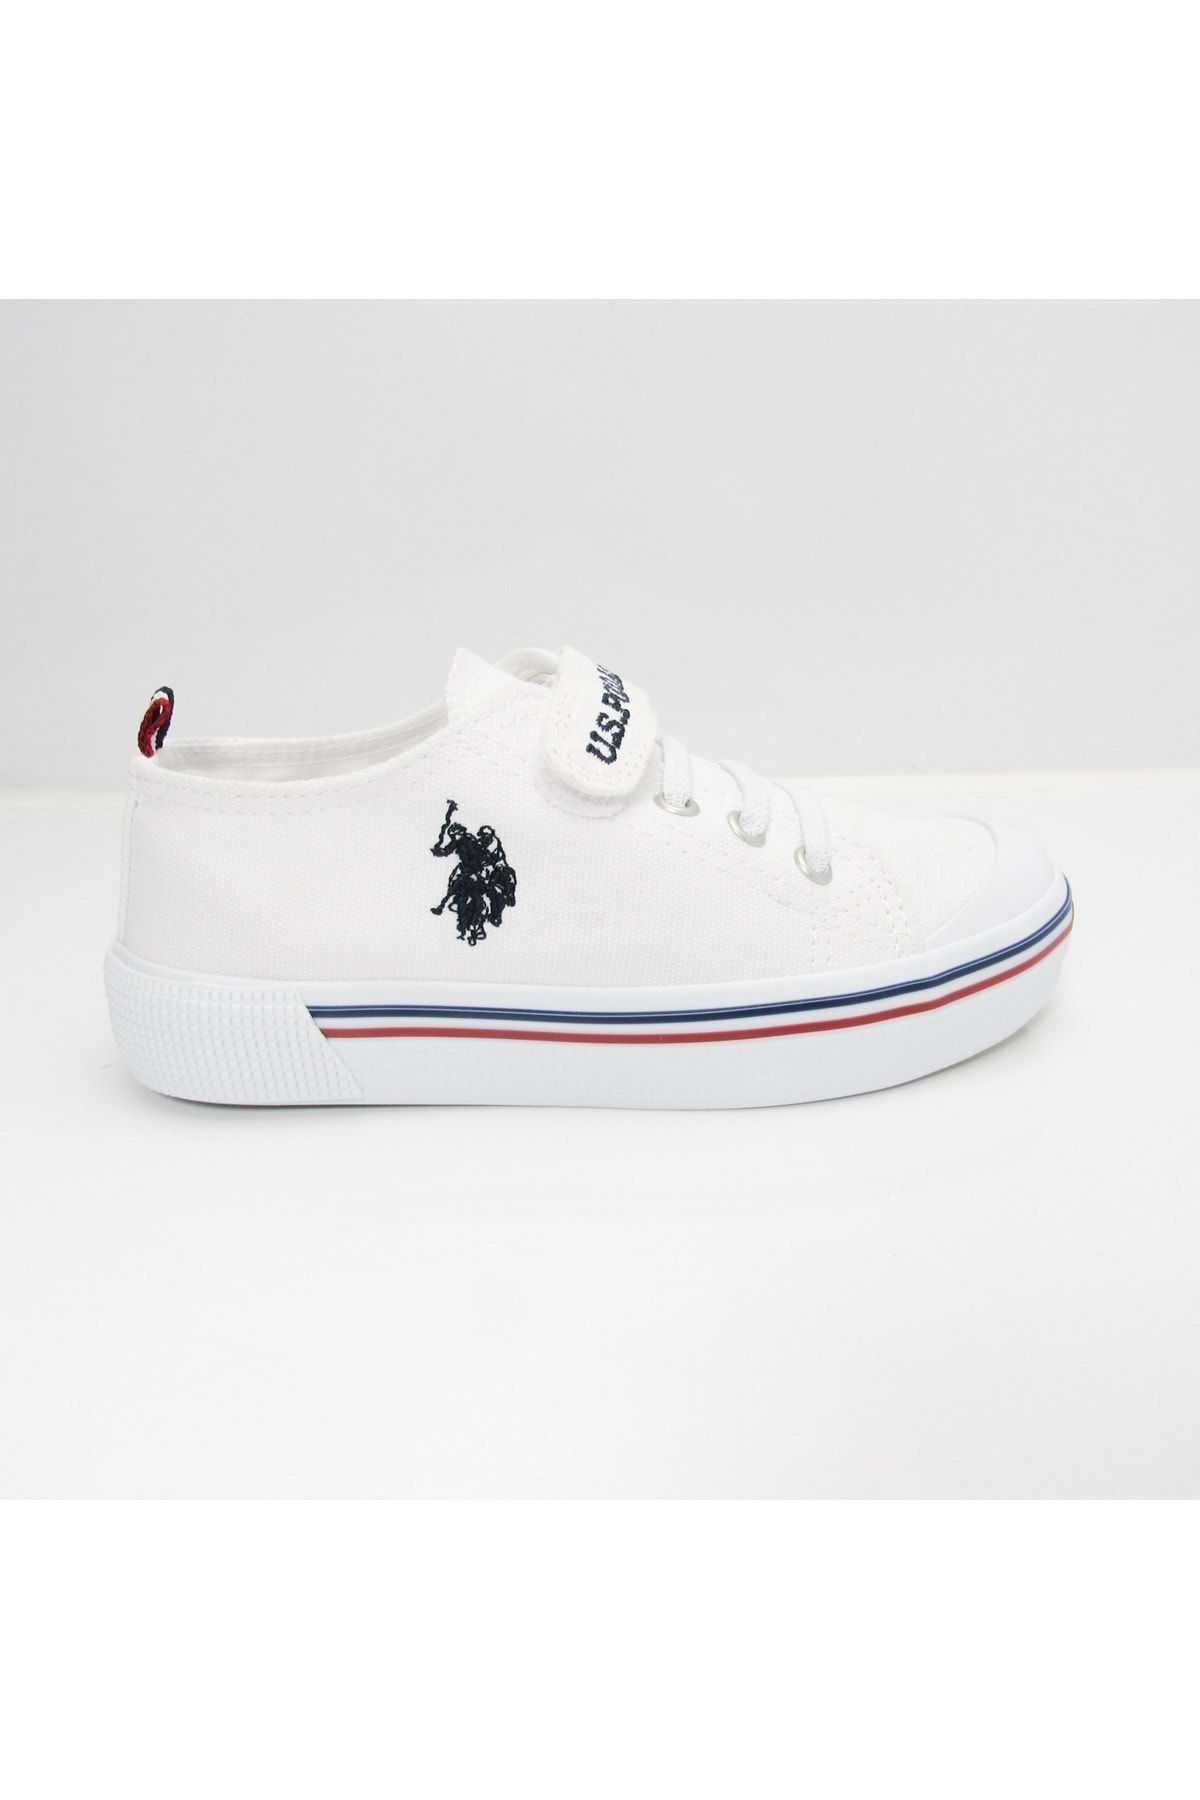 U.S. Polo Assn. PENELOPE 1FX Beyaz Erkek Çocuk Sneaker 100910628